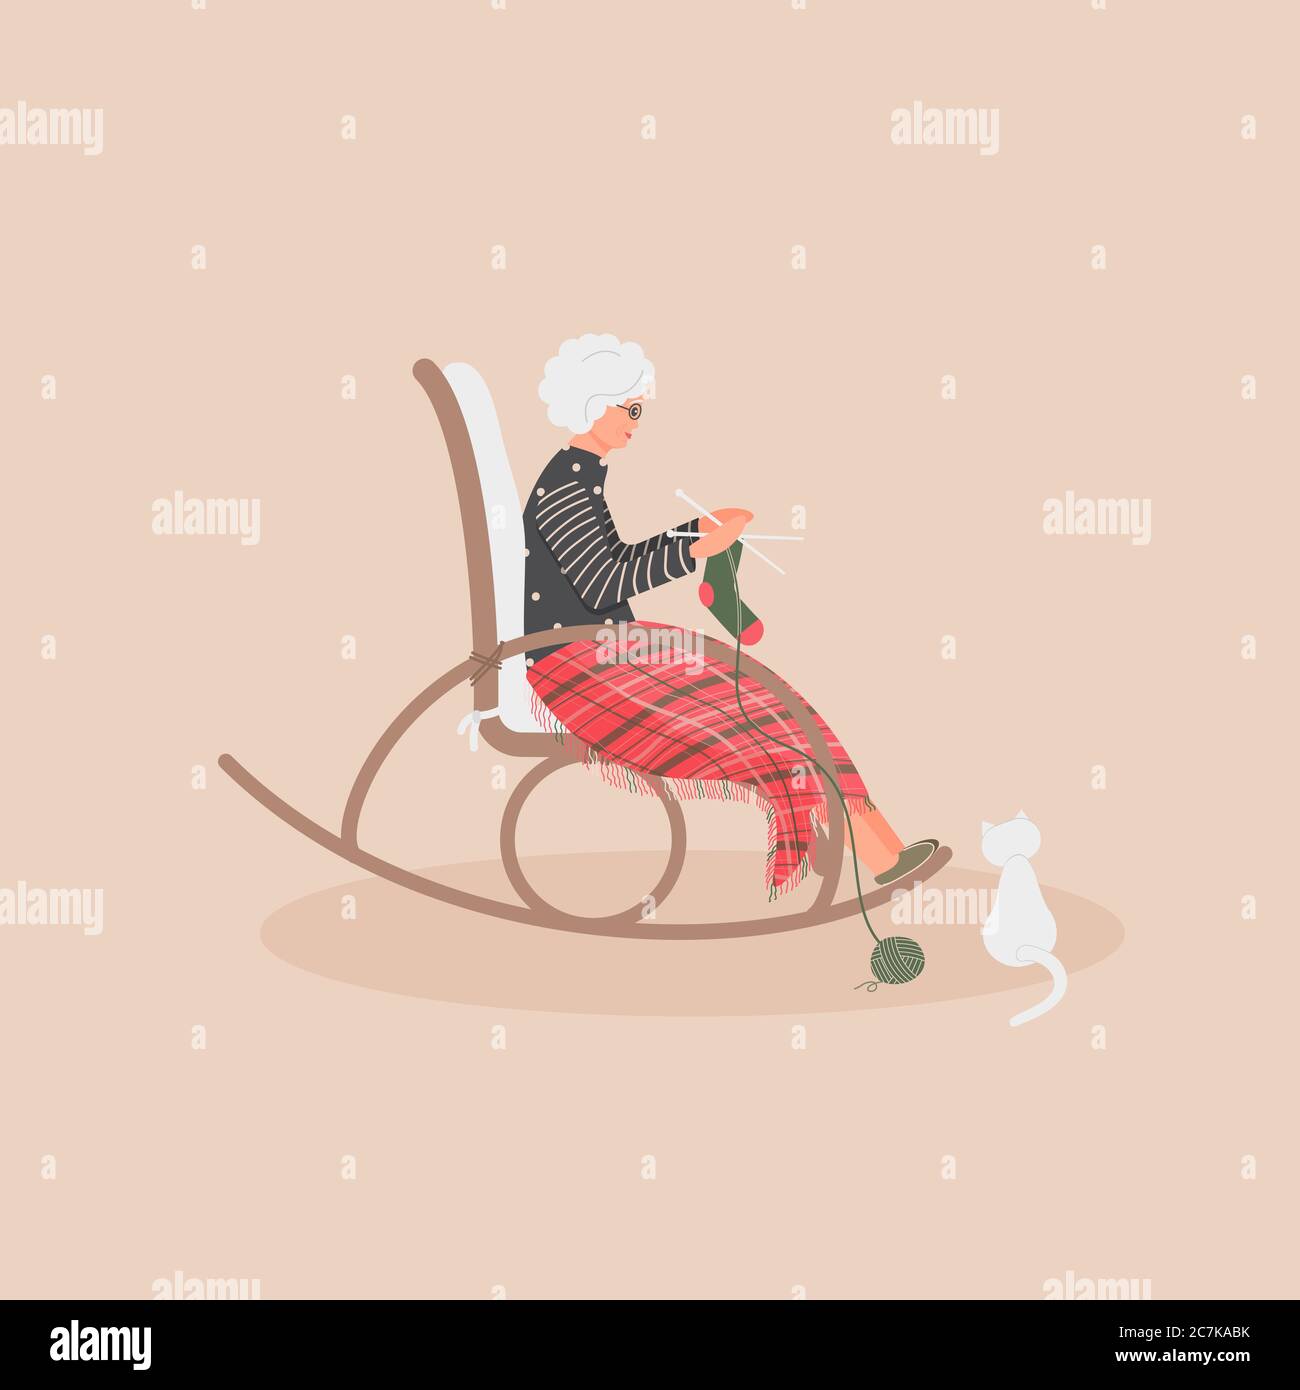 Ältere nette Frau sitzt in einem Schaukelstuhl.Alte Dame bedeckte ihre Füße mit kariertem Wollplaid.Cartoon Oma strickt eine Socke Stock Vektor